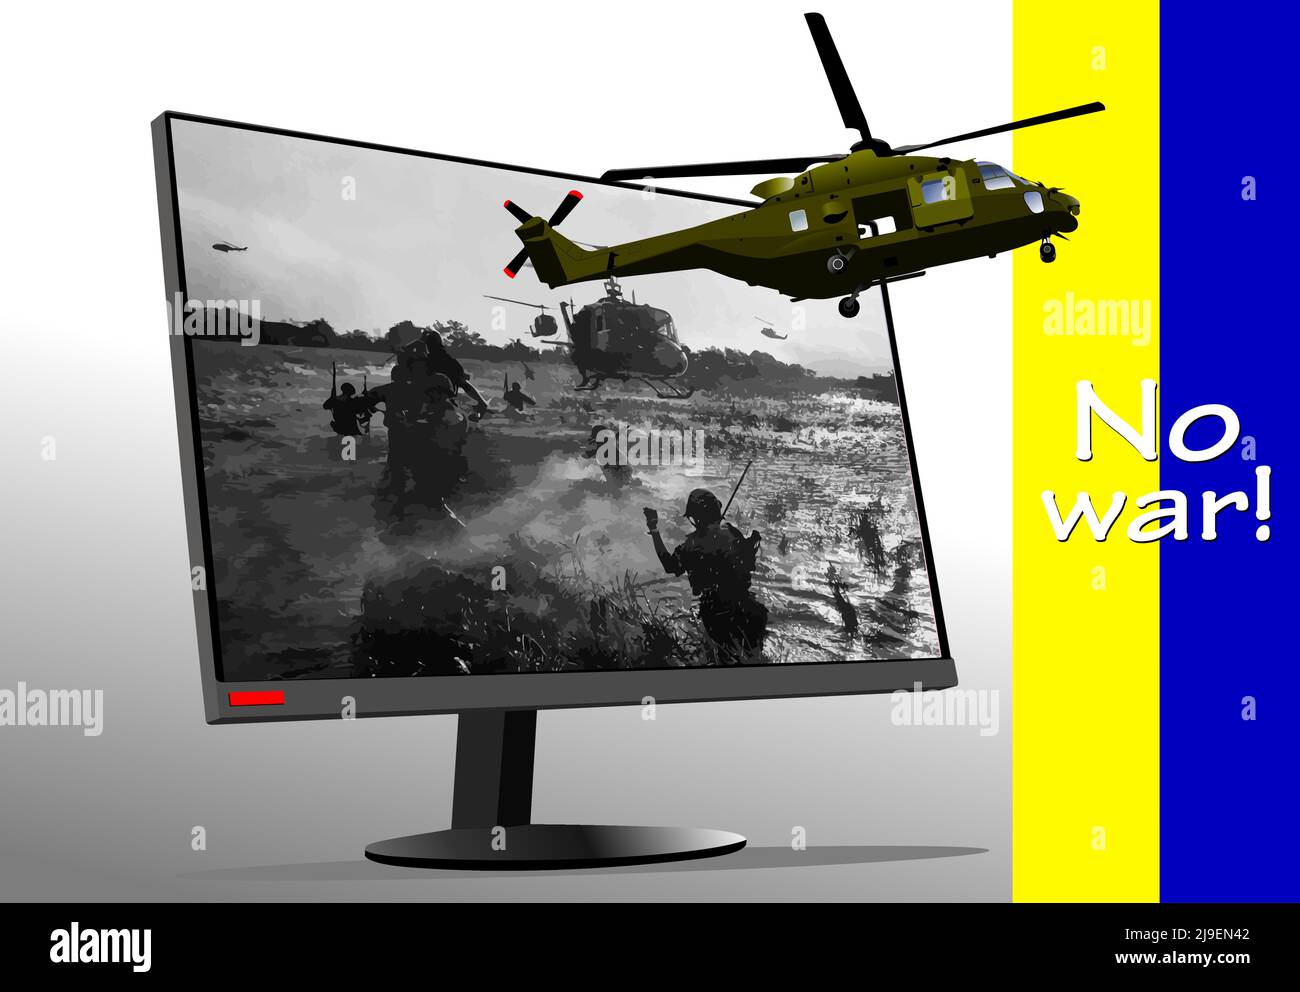 Immagine astratta con schermo tv e immagine elicottero. Nessuna guerra! 3d illustrazione vettoriale Illustrazione Vettoriale